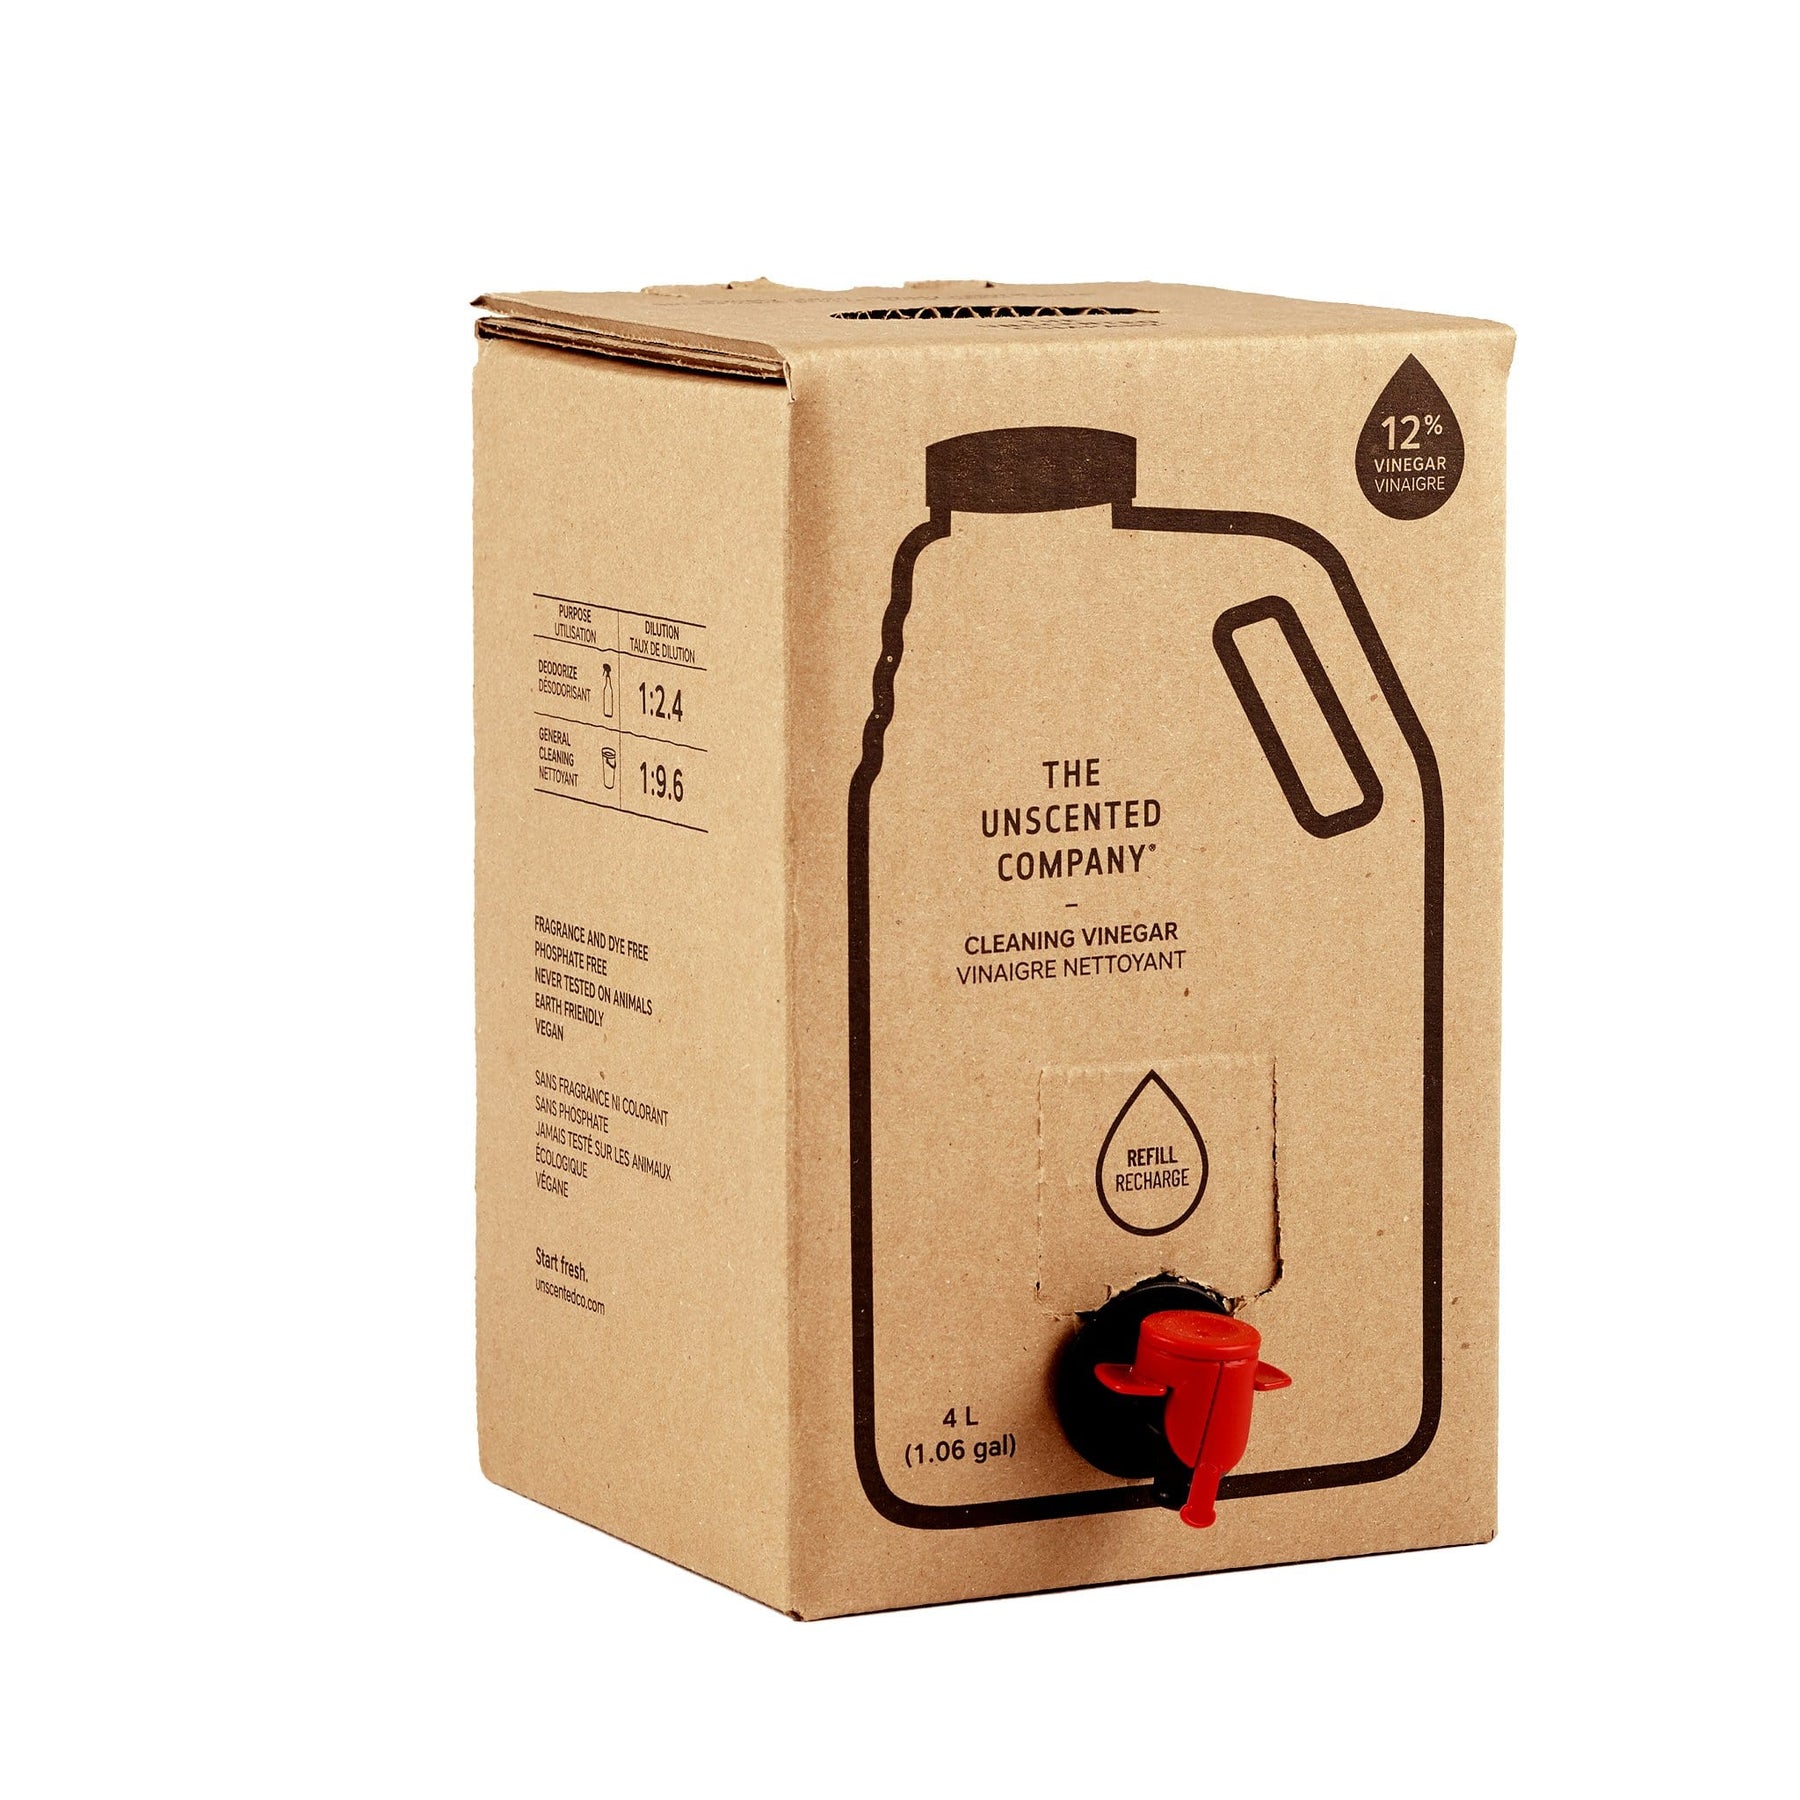 Cleaning Vinegar (12%) - 4 L Refill box